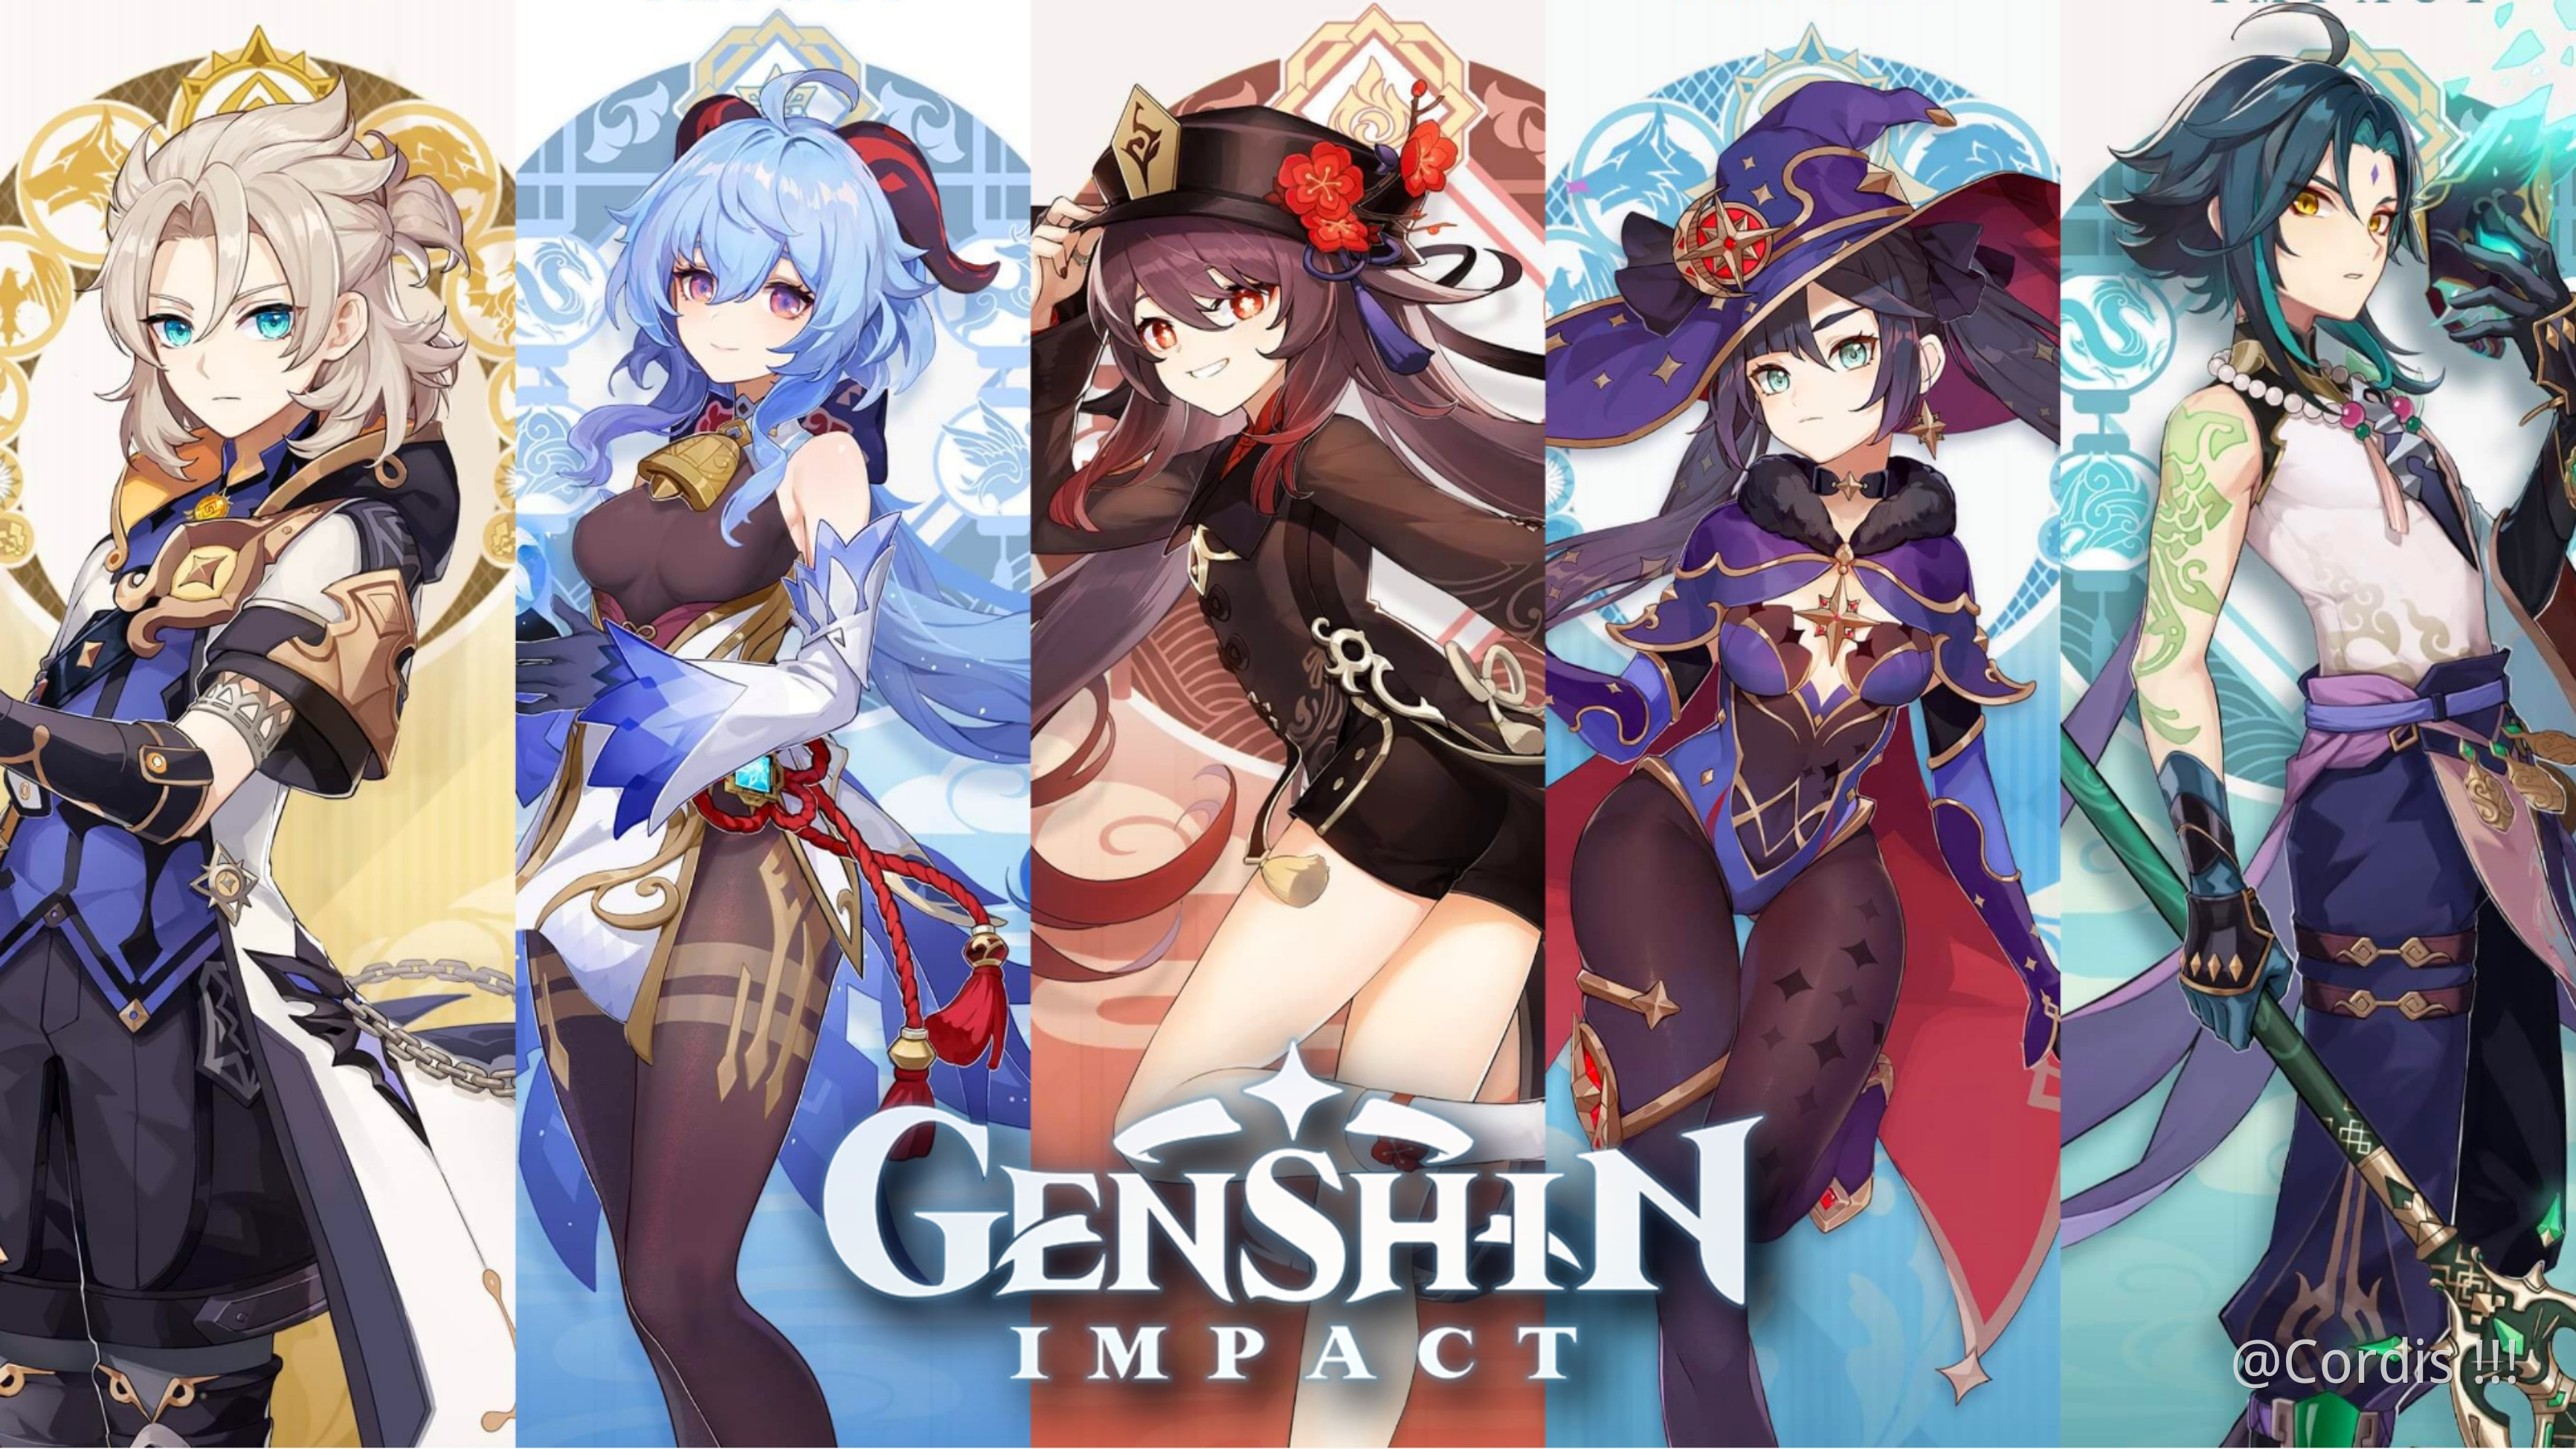 Genshin Impact |「AMV/GMV」| Take Over Genshin Impact | HoYoLAB